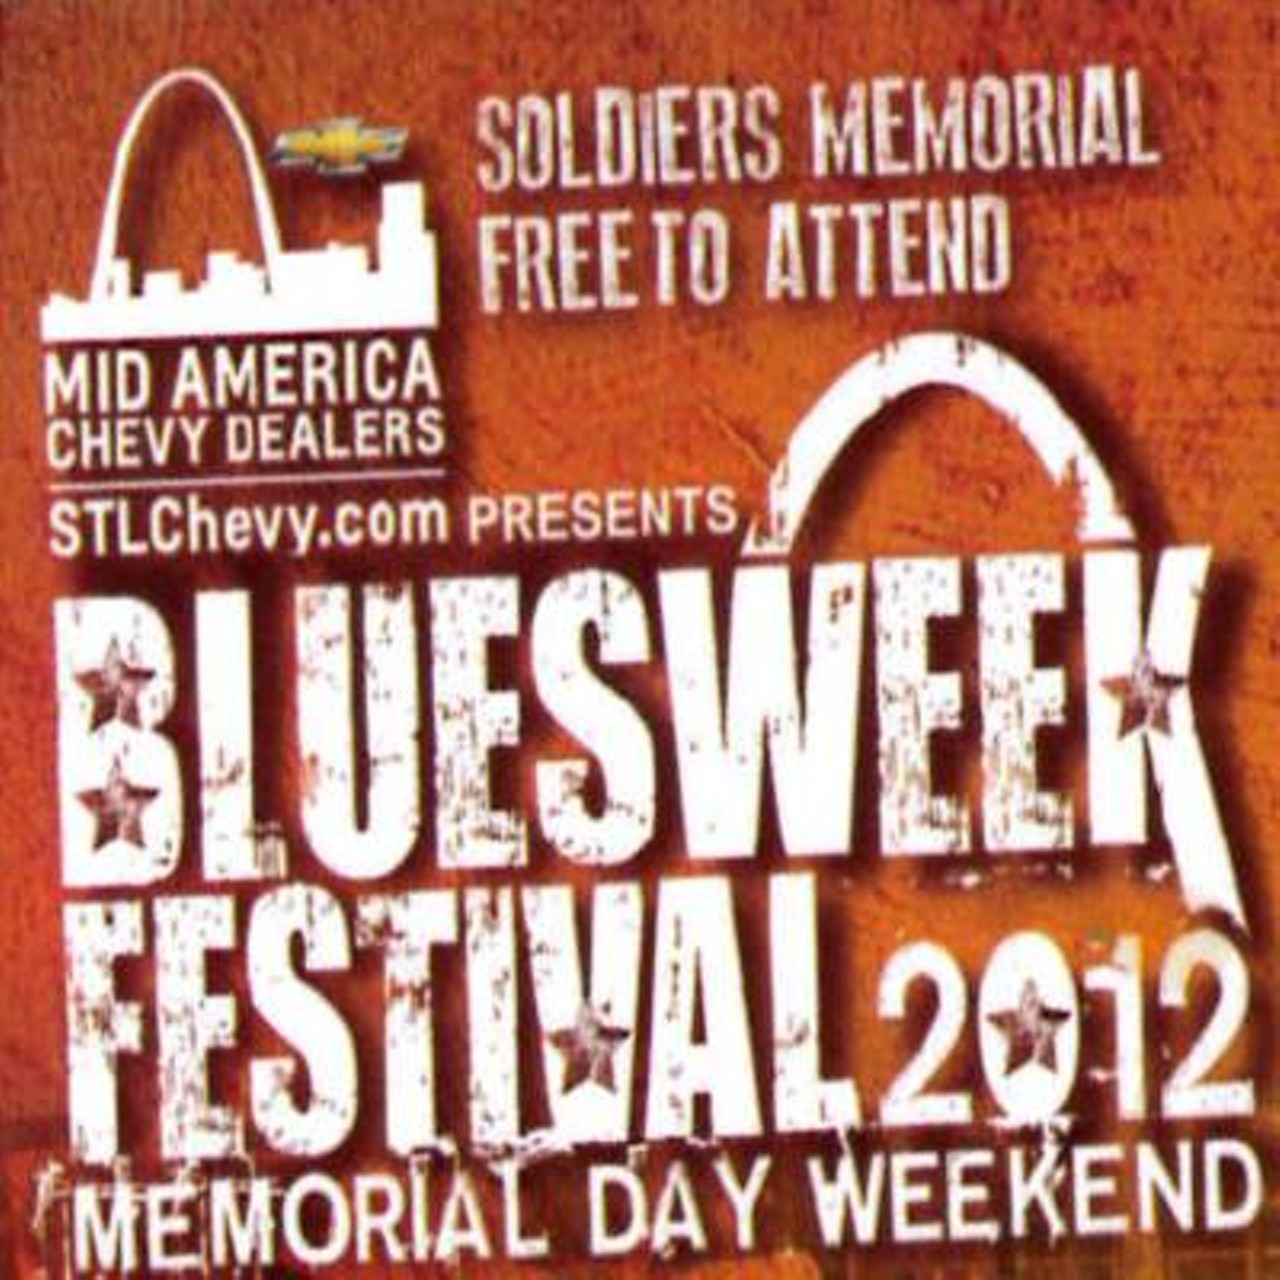 Bluesweek Festival